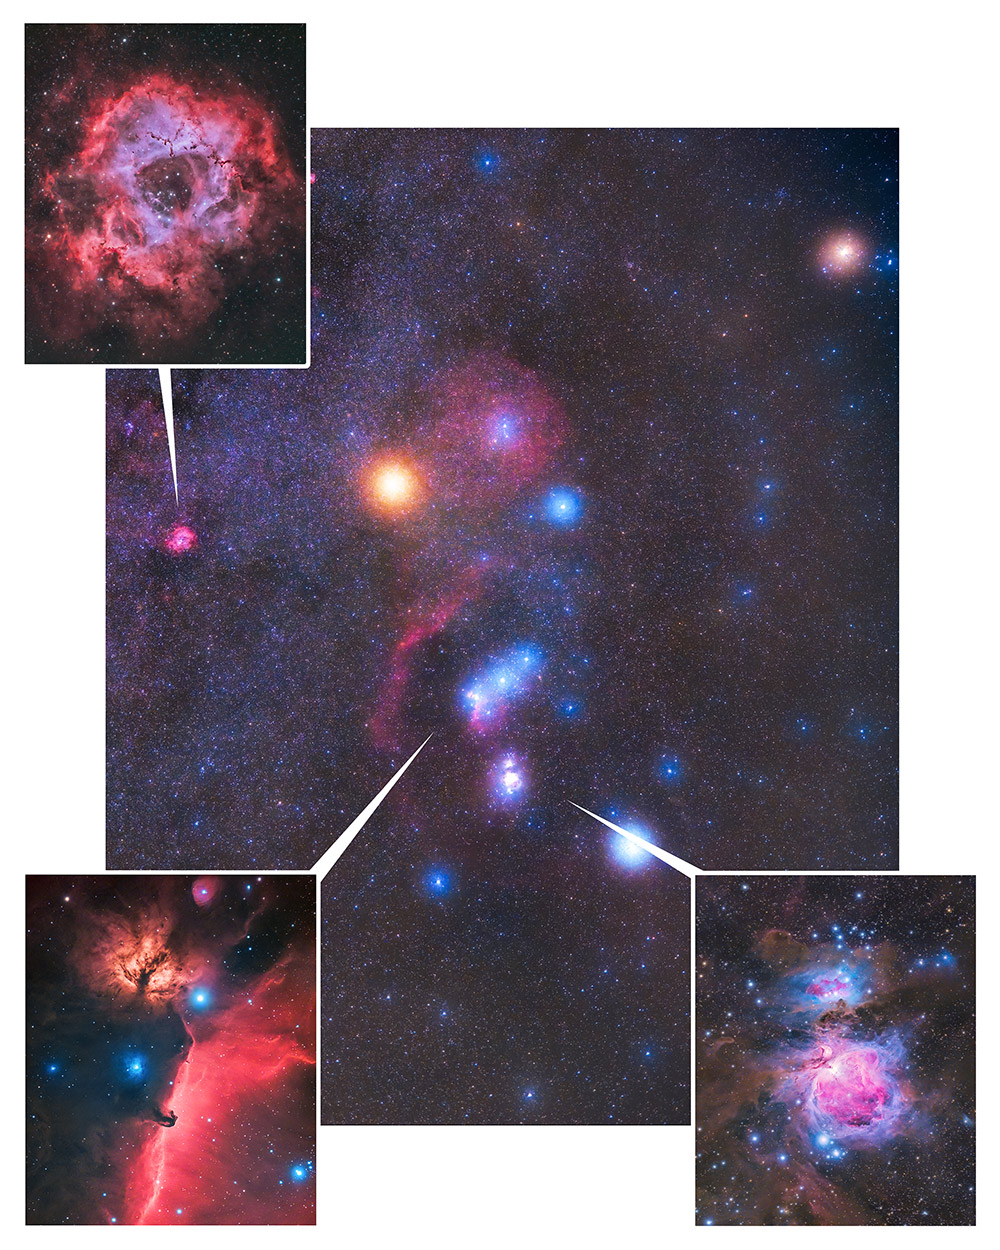 deep-sky objects in Orion